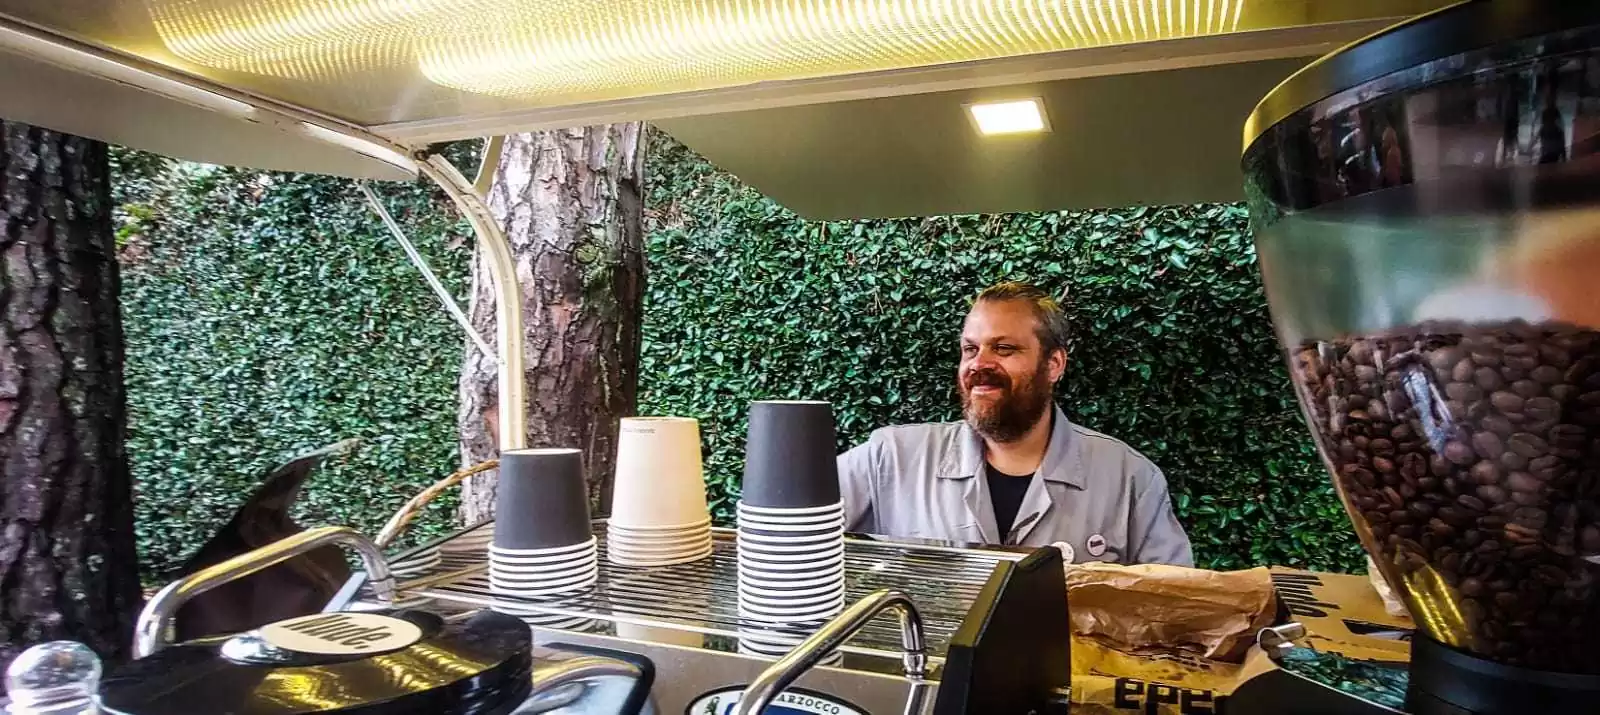 Ritmo e café - Um percussionista barista | Blog Nude